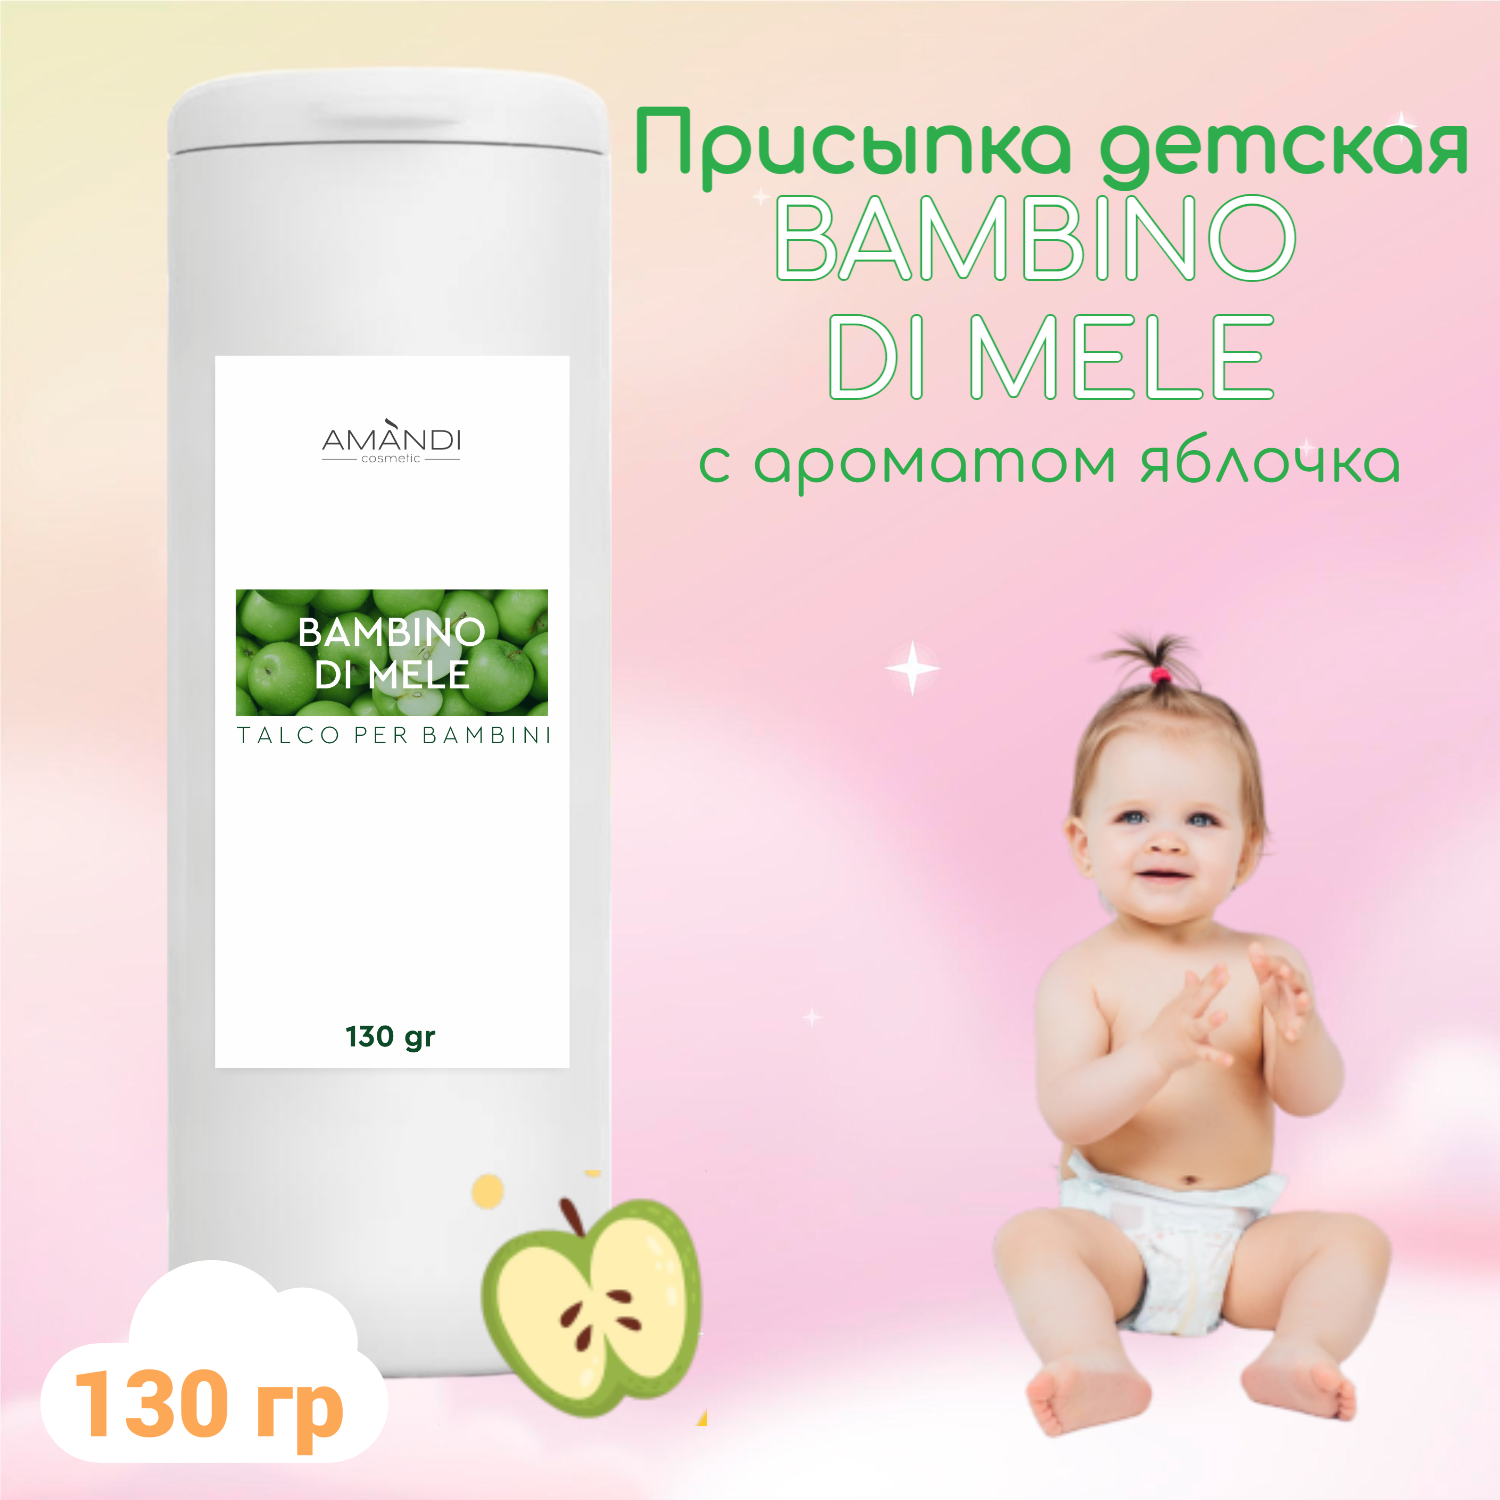 Присыпка детская AMANDI BAMBINO набор без отдушки и с ароматом яблока 2 шт по 130 грамм - фото 3